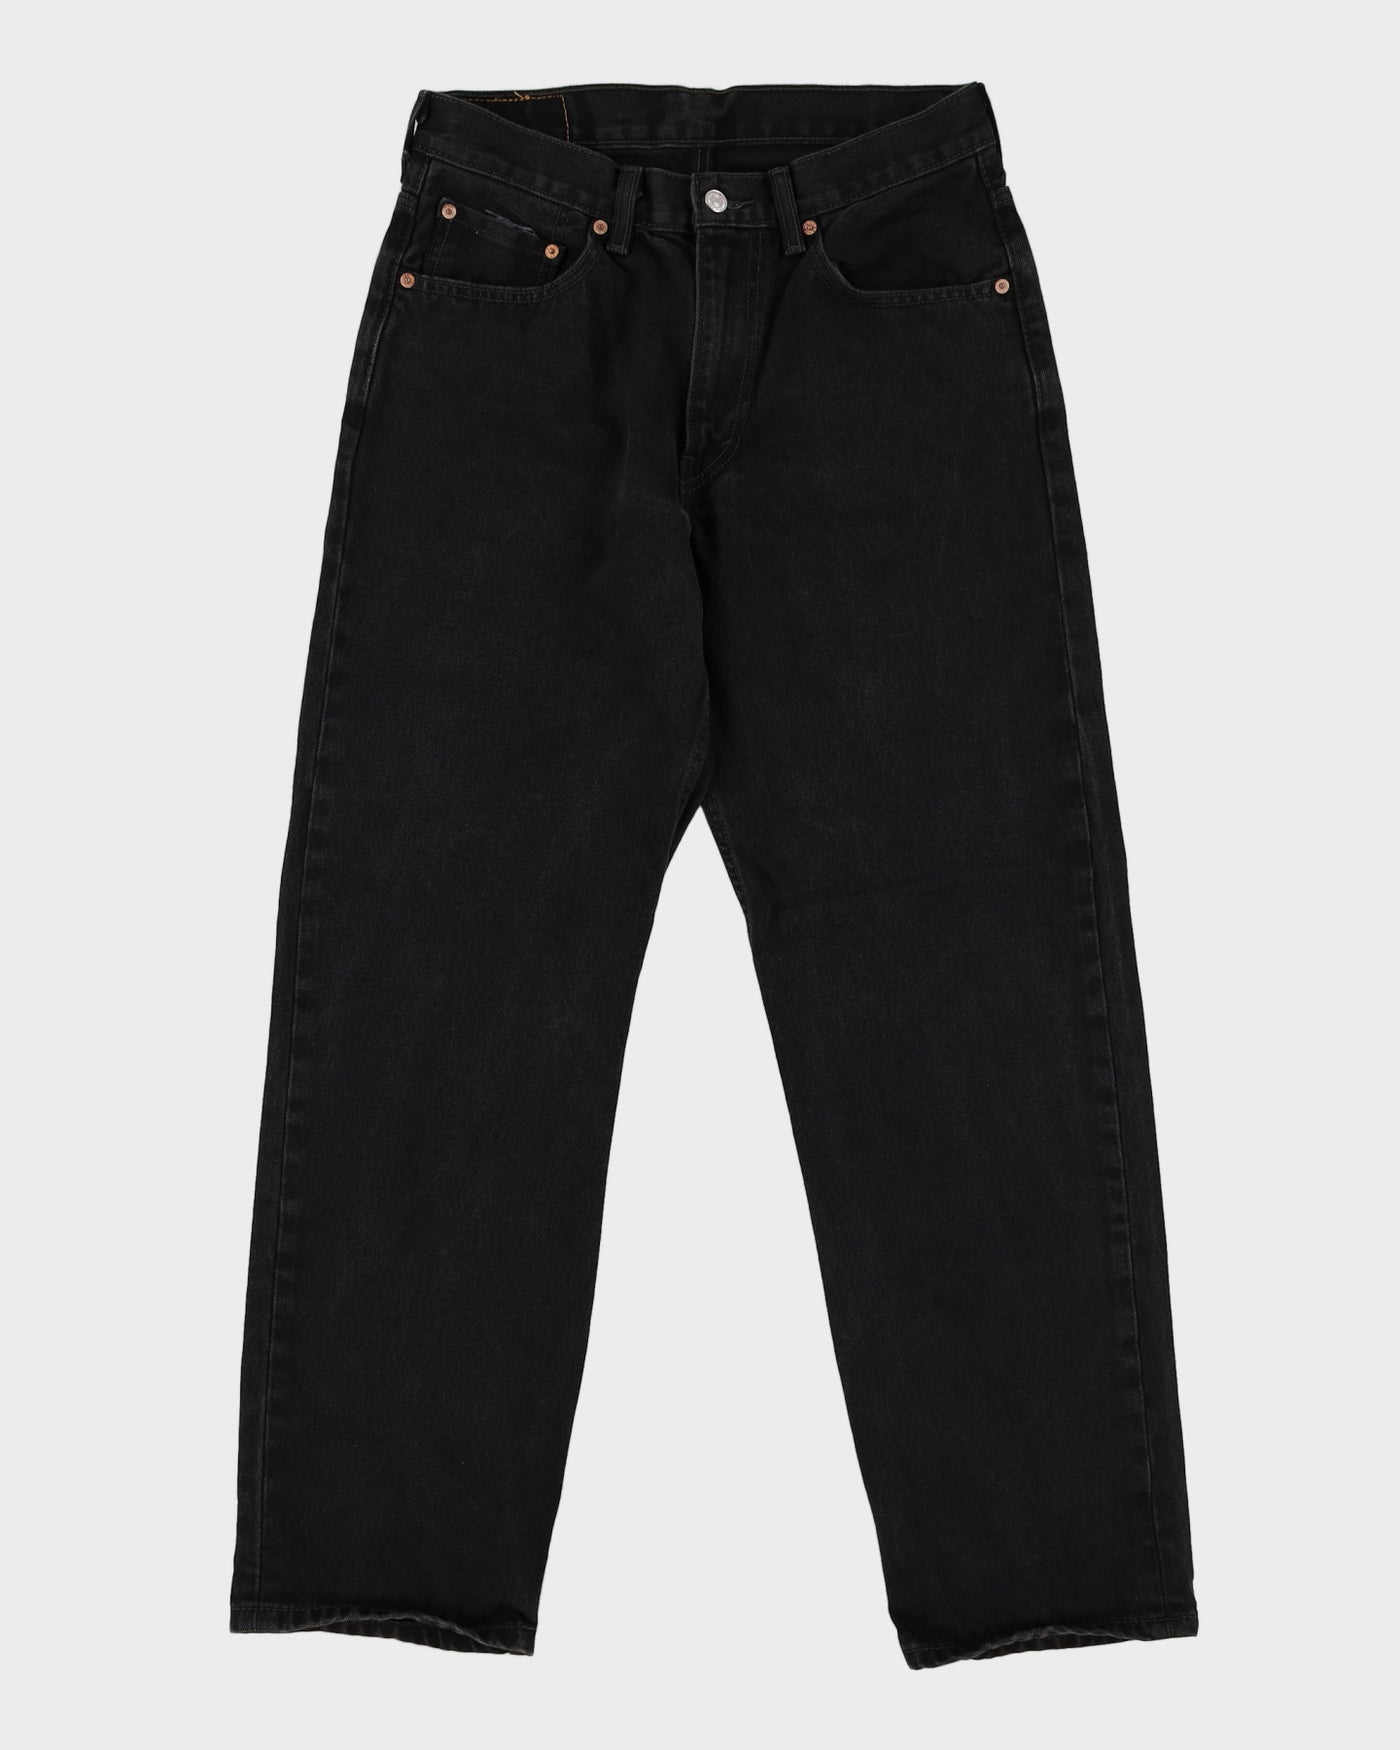 Levi's 505 Black Dark Wash Jeans - W32 L31